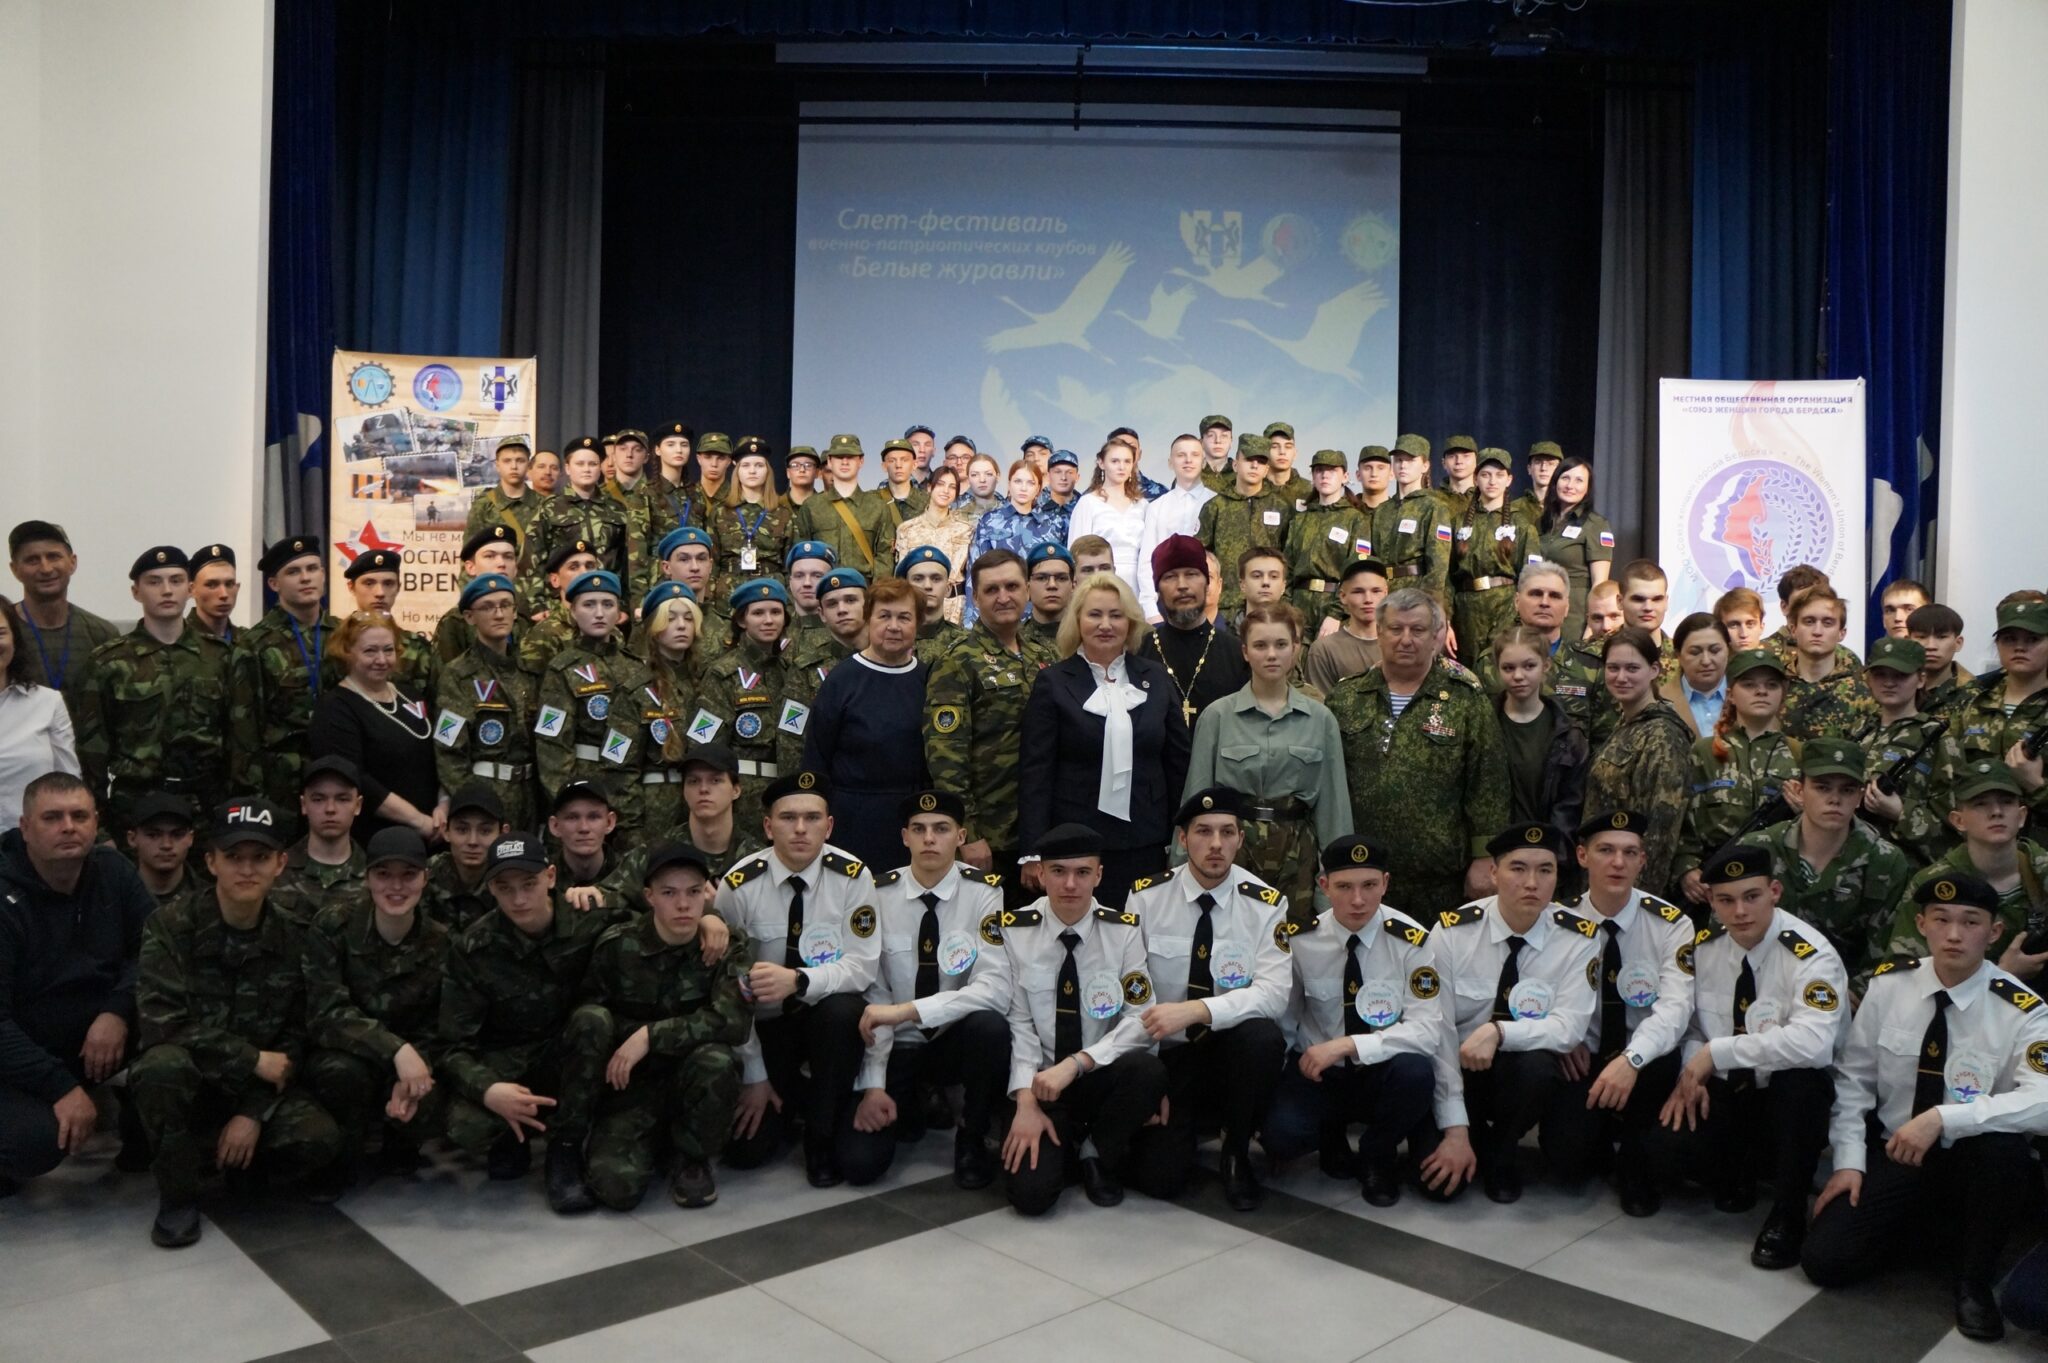 10 команд профессиональных учреждений области собрались в Бердске на Слет-фестиваль «Белые журавли»